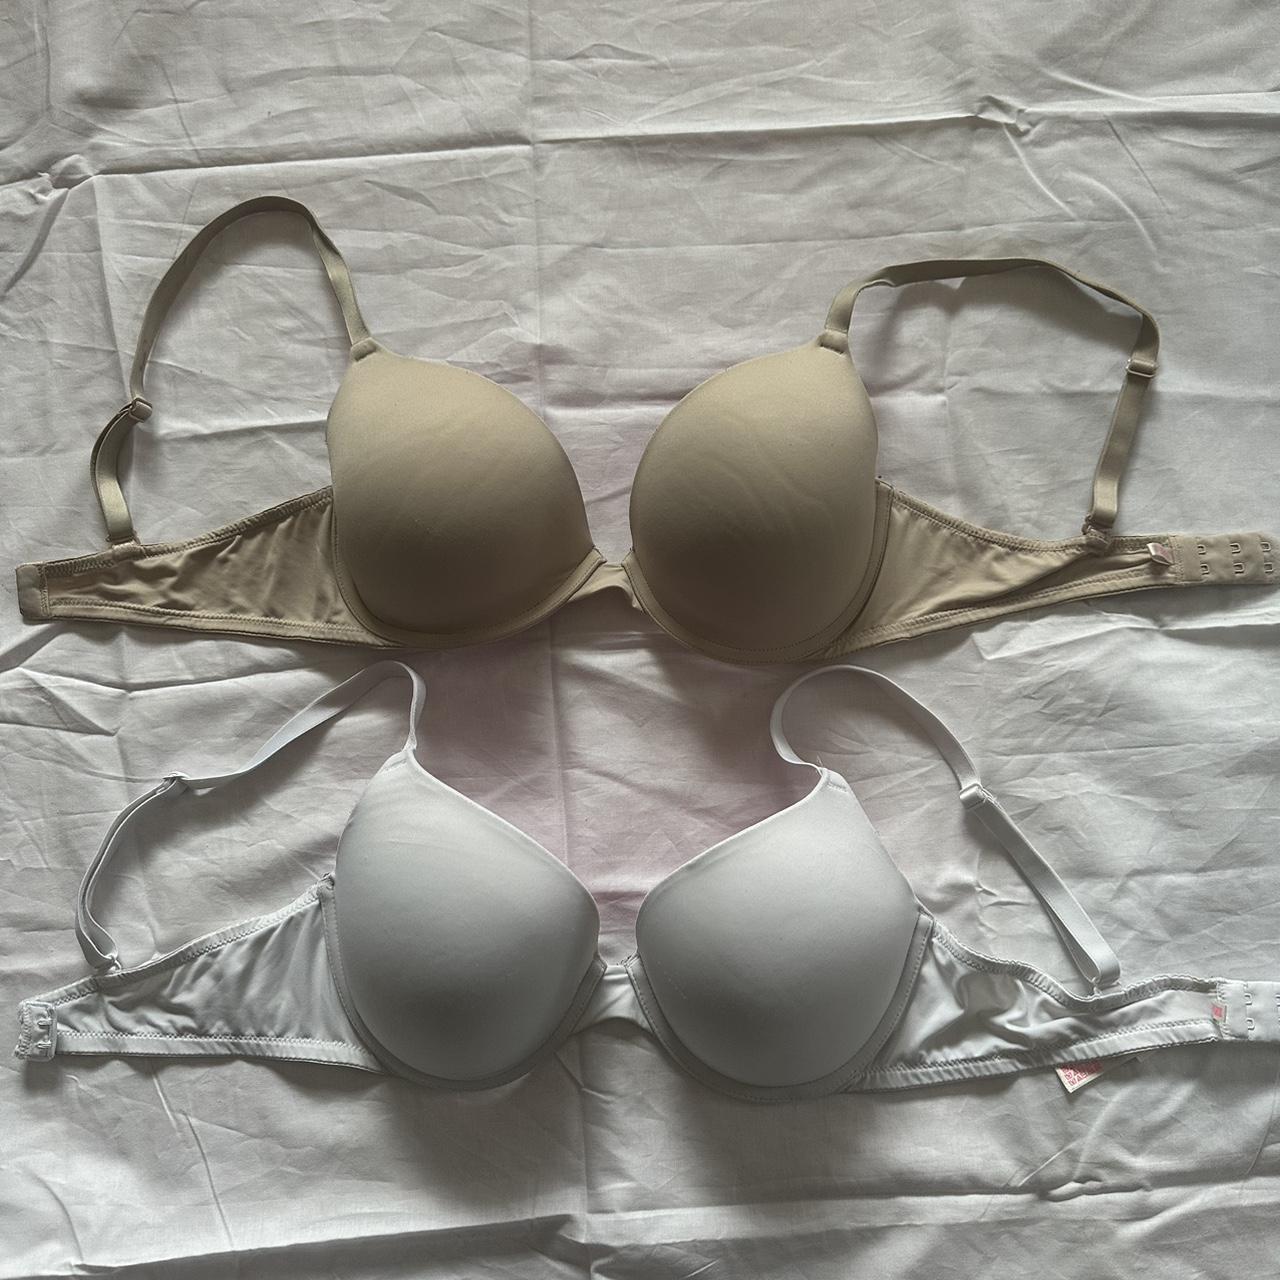 Bundle Victoria's Secret bras! Both size 34D No - Depop